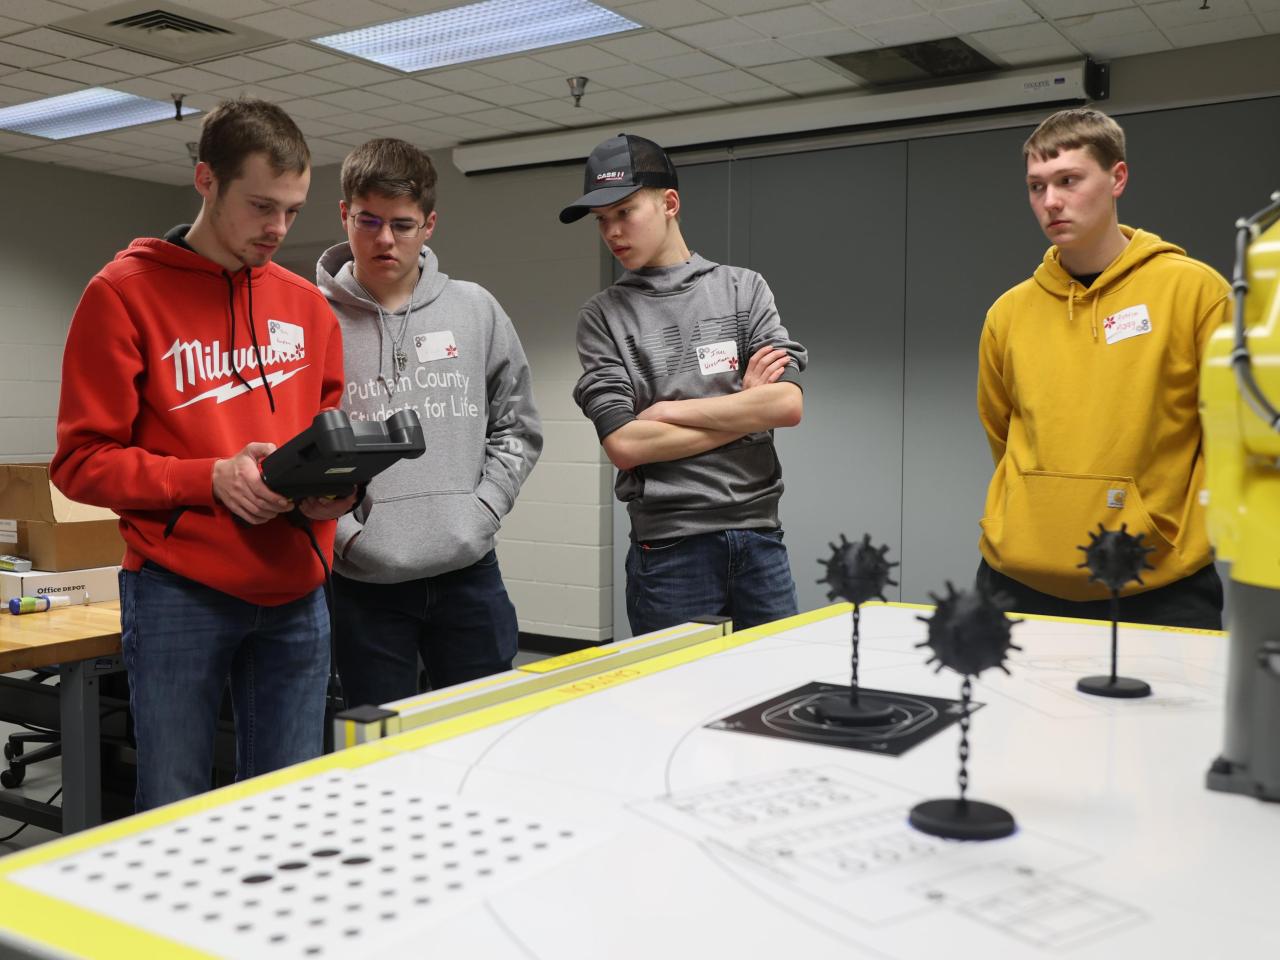 Four students navigate a robotics challenge